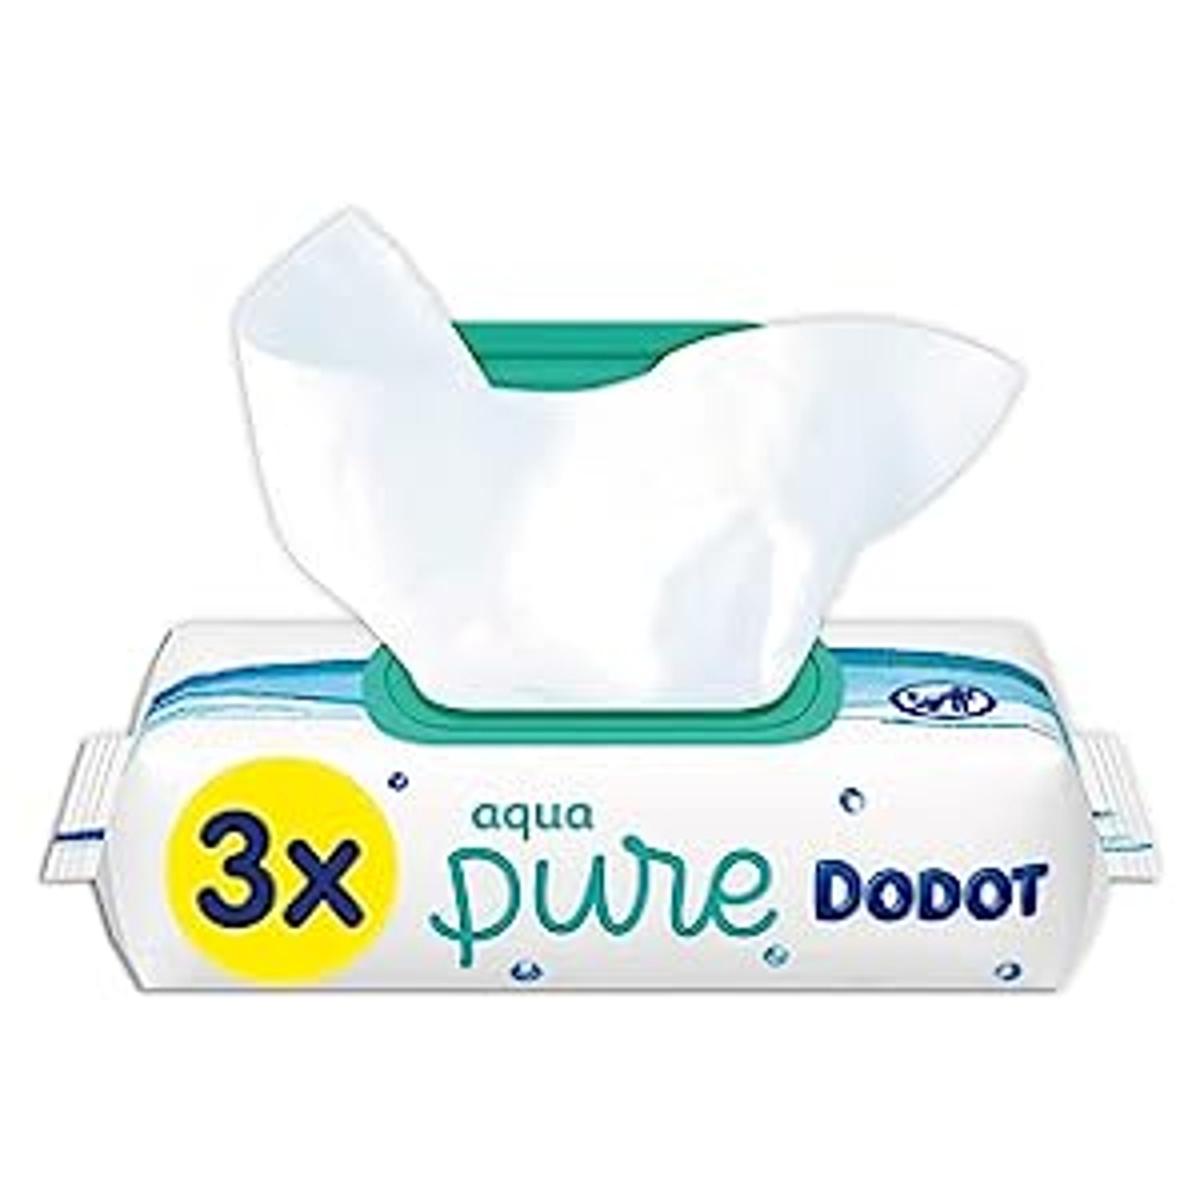 Dodot - Toallitas Aqua Pure para bebé - 3 paquetes, 144 unidades, Toallitas